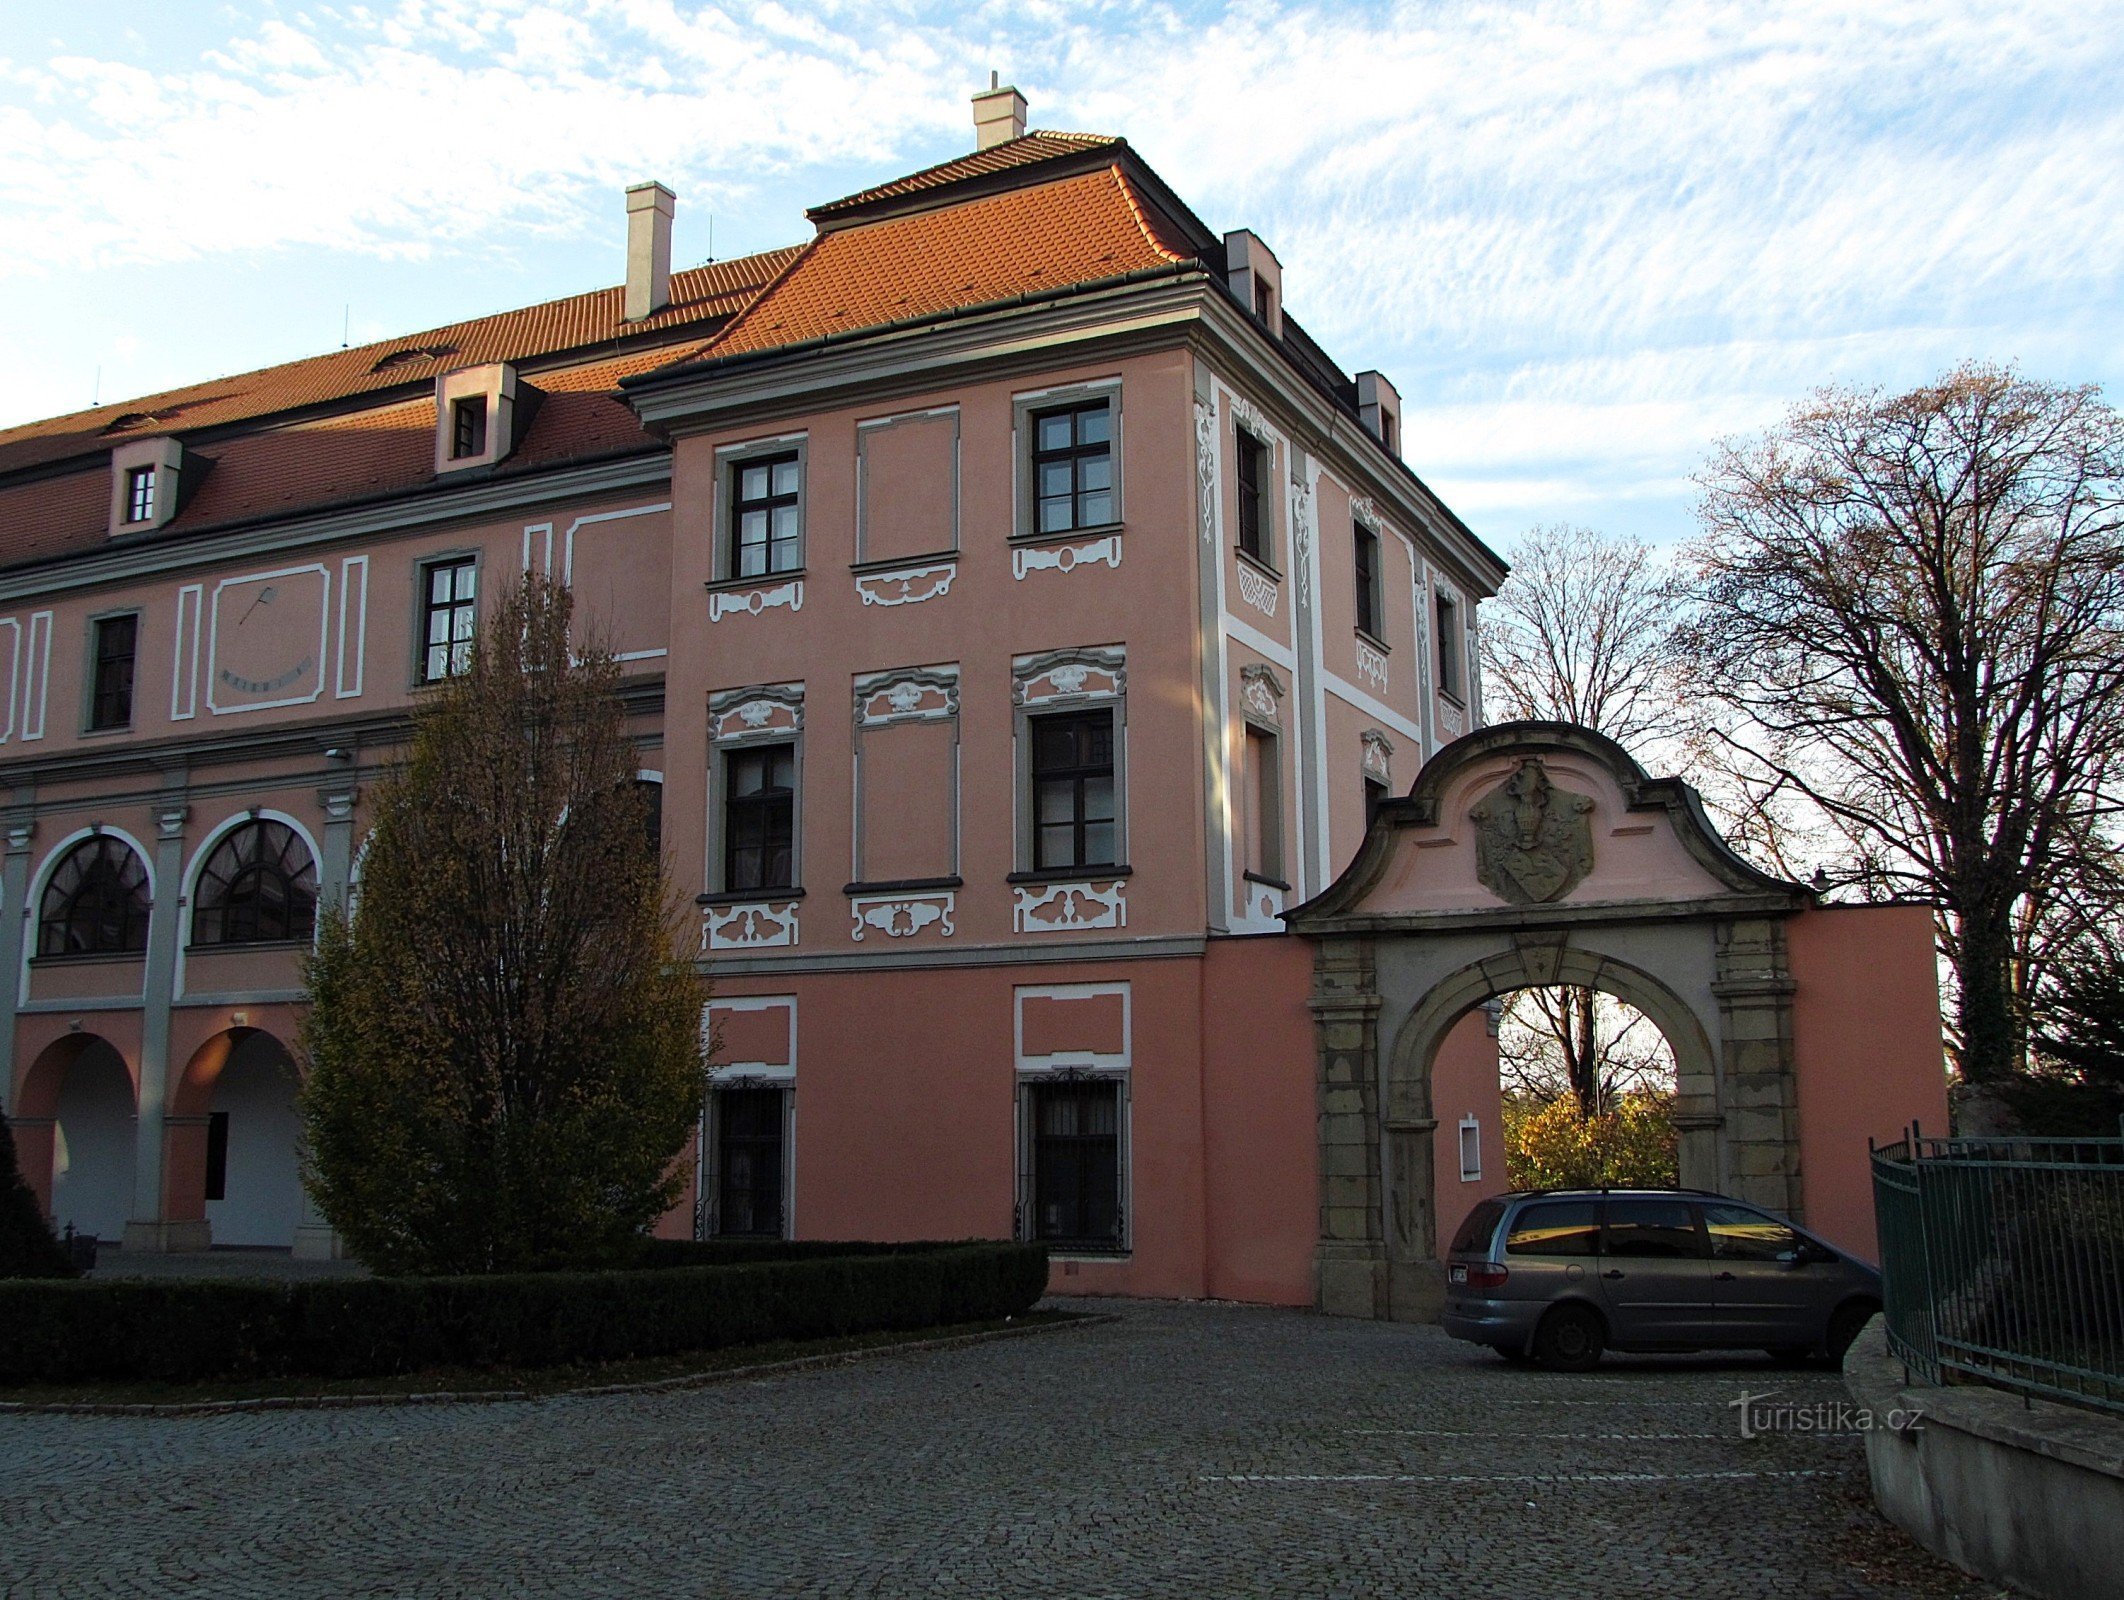 Valašské Meziříčí - Château de Žerotín dans le centre-ville